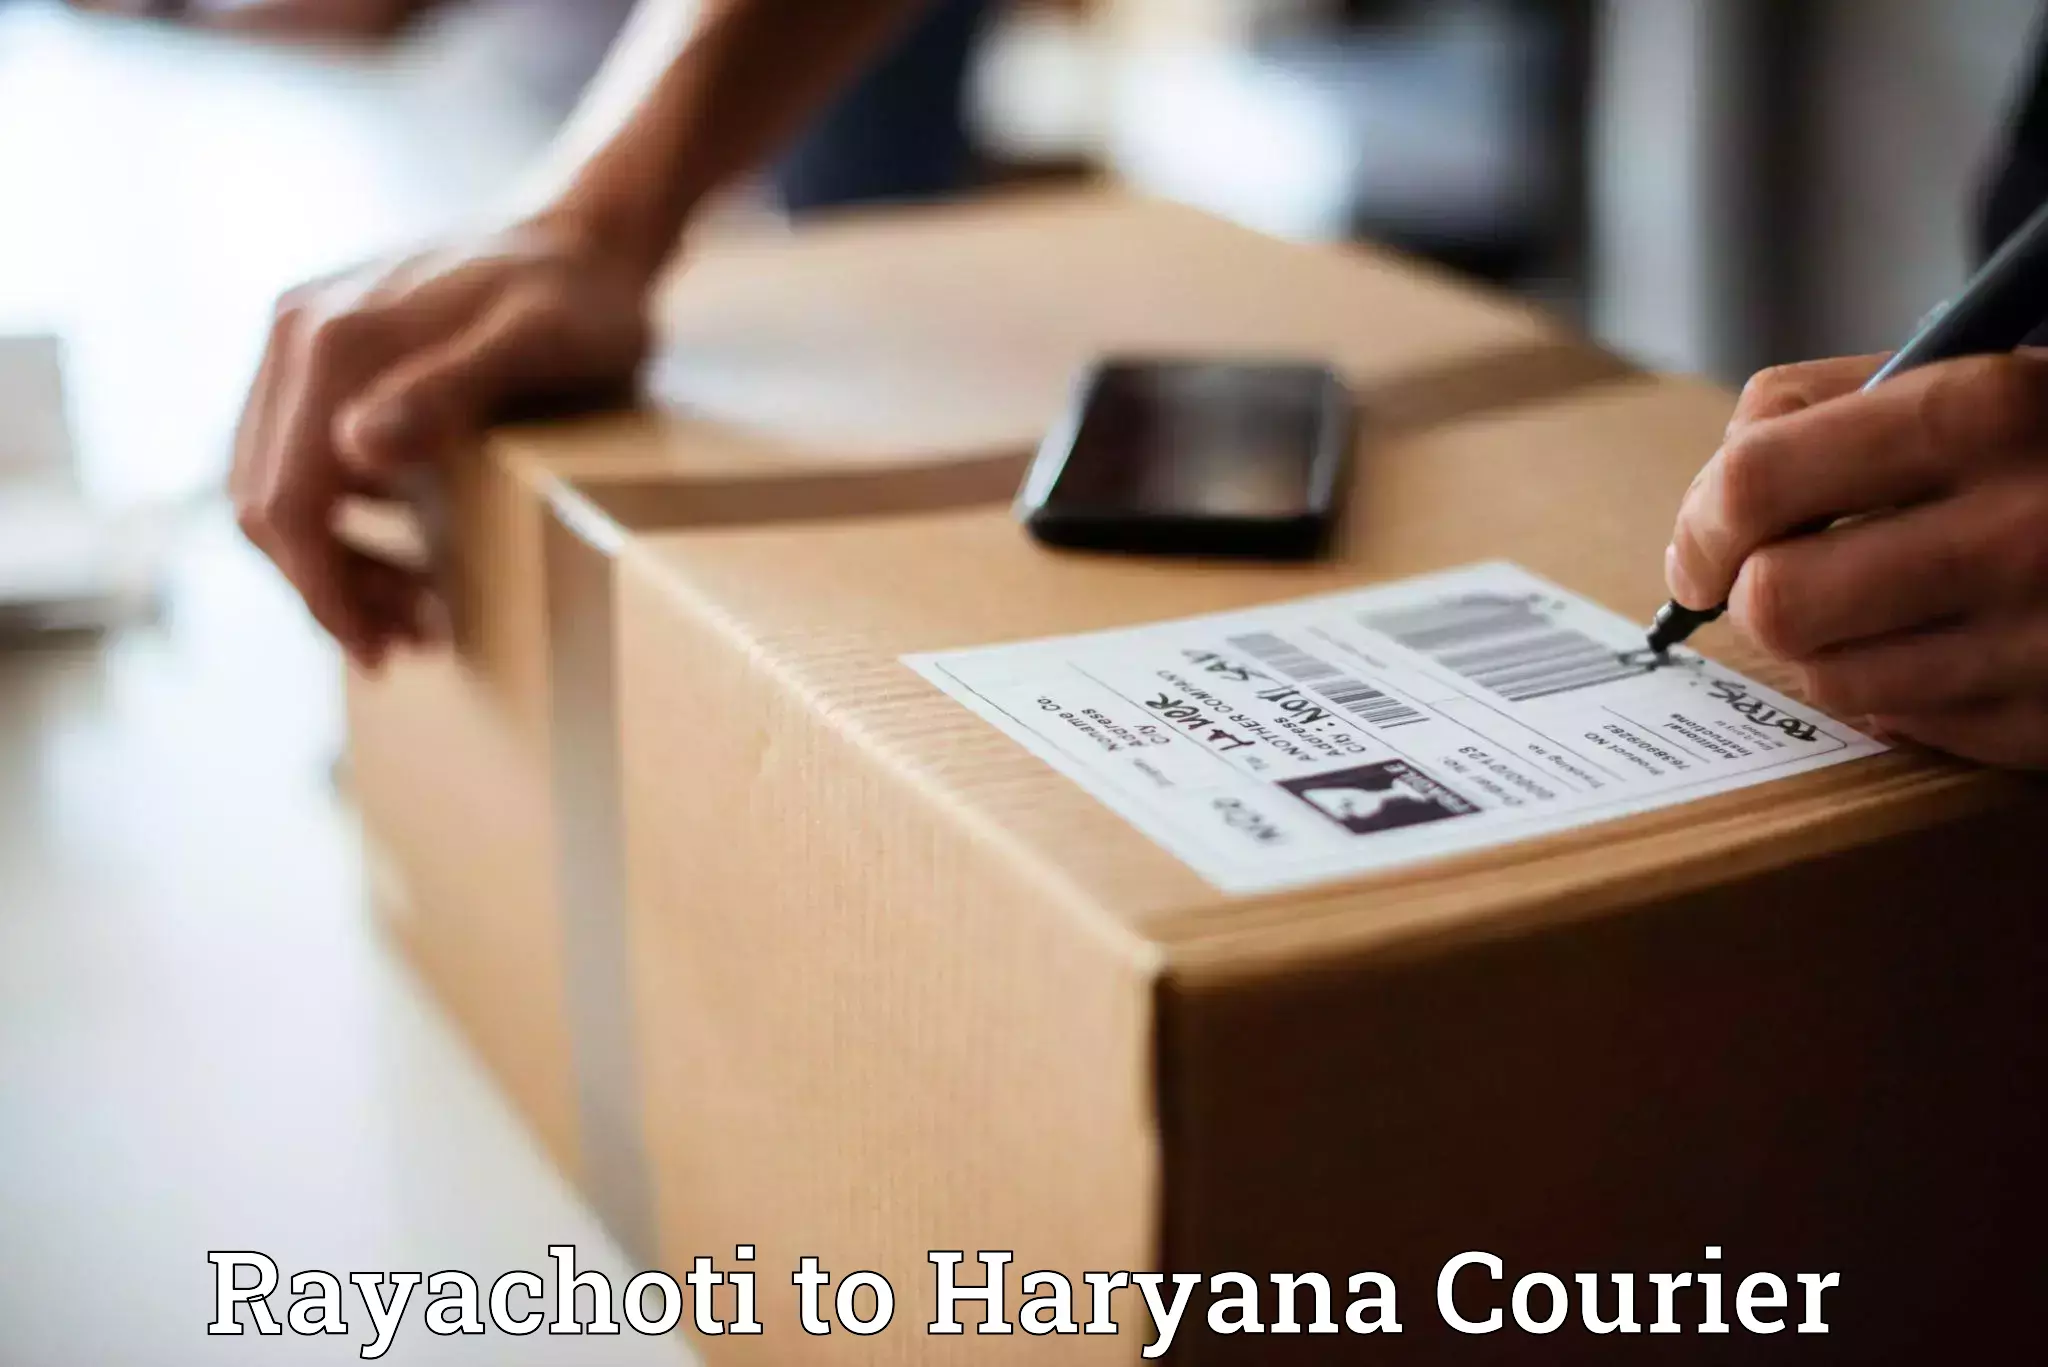 Fast-track shipping solutions Rayachoti to Chaudhary Charan Singh Haryana Agricultural University Hisar